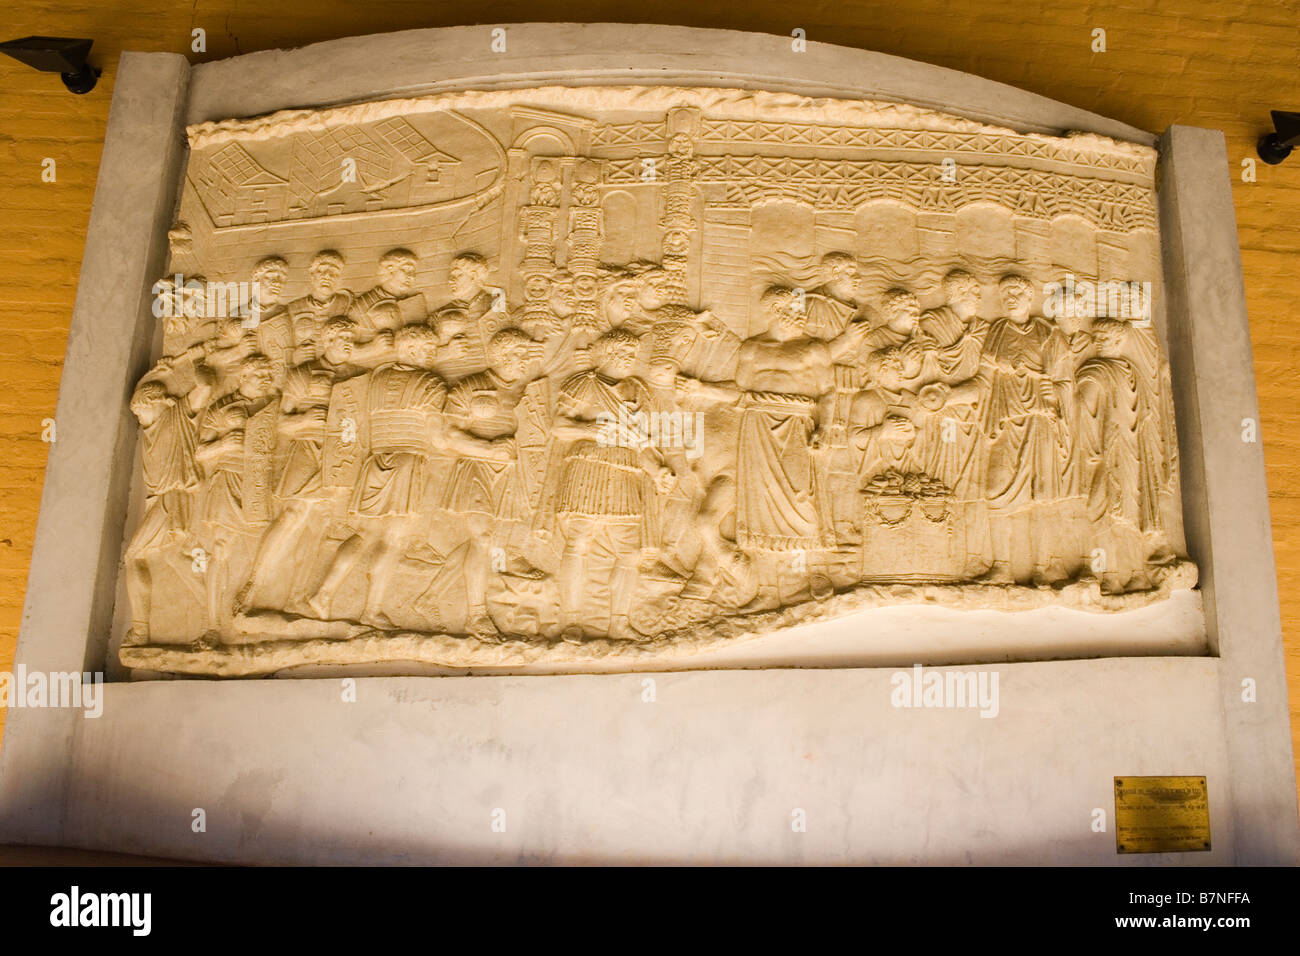 Italica, Santiponce, Siviglia, Spagna. Placca da muro della colonna di Traiano. Foto Stock